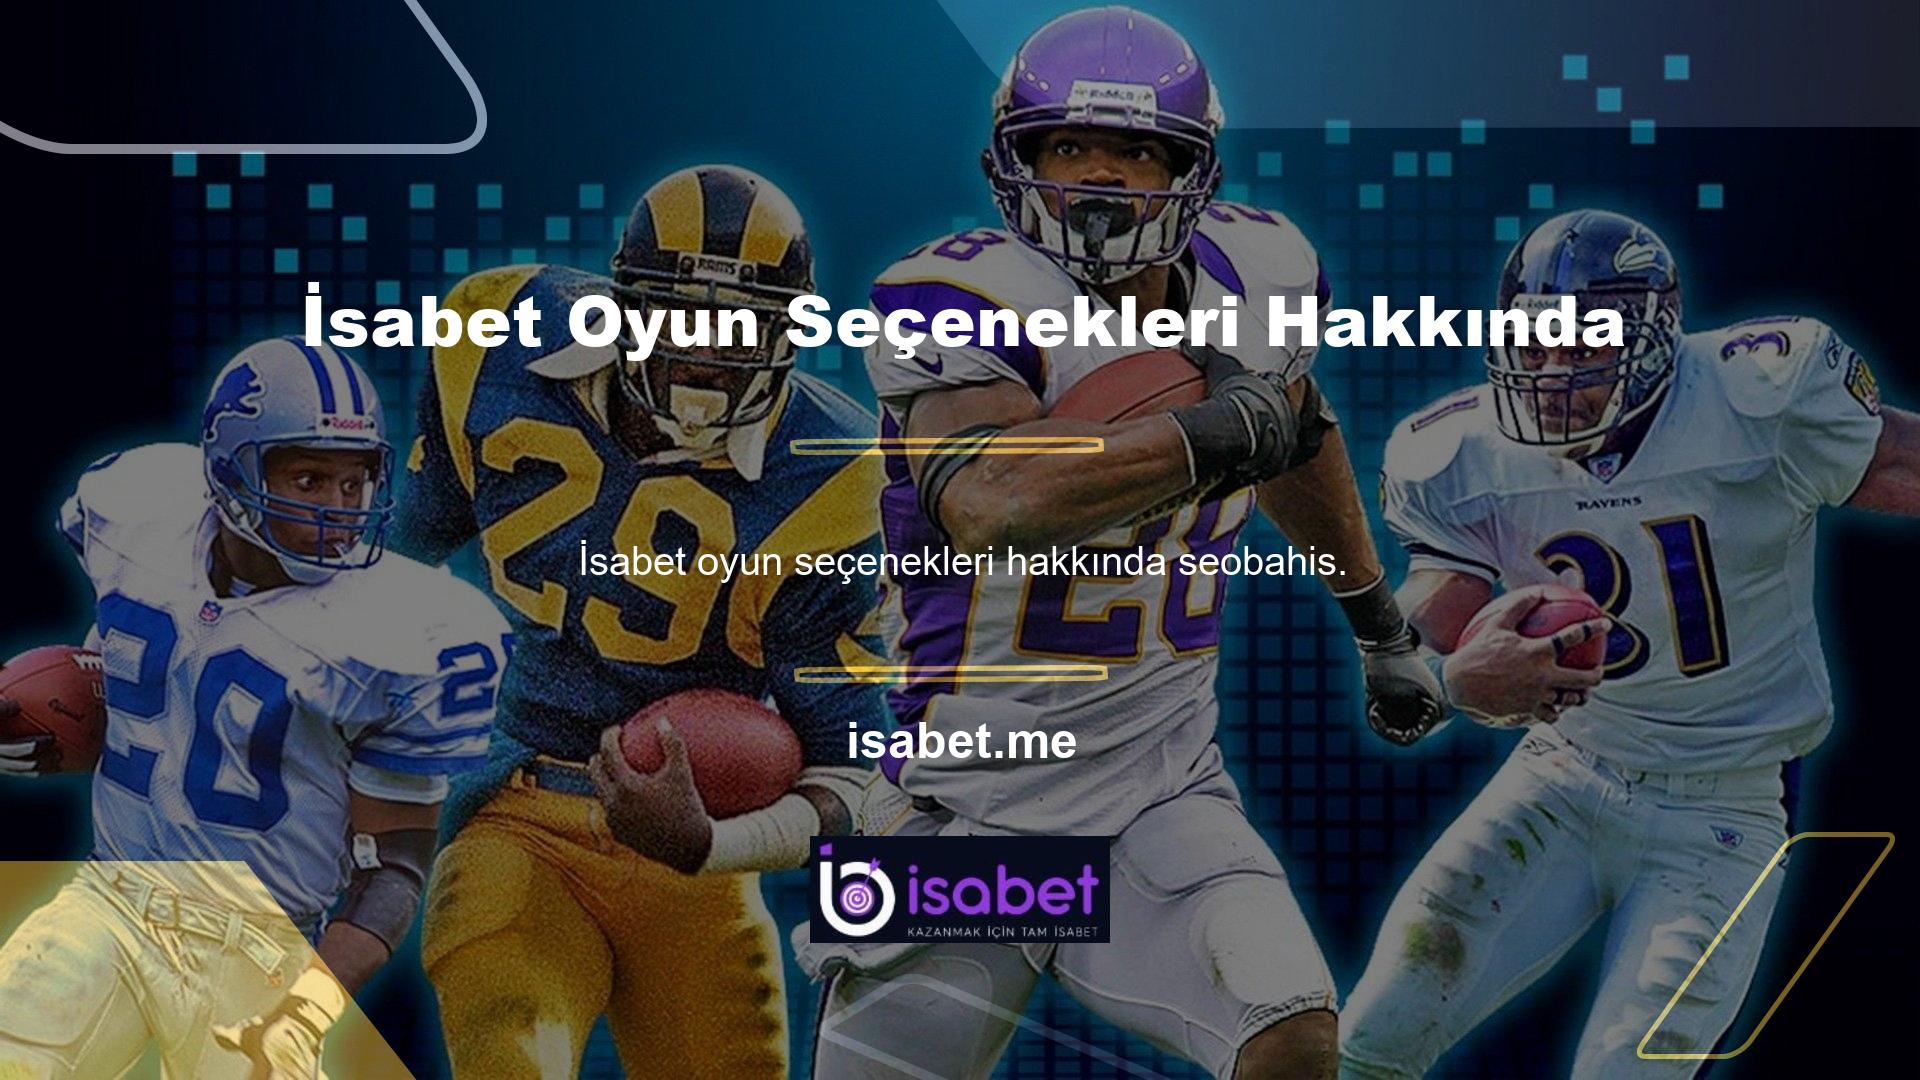 com, Türk oyun severler için geniş bir yelpazede Türkçe Oyunlar sunmaya emin adımlarla devam ediyor